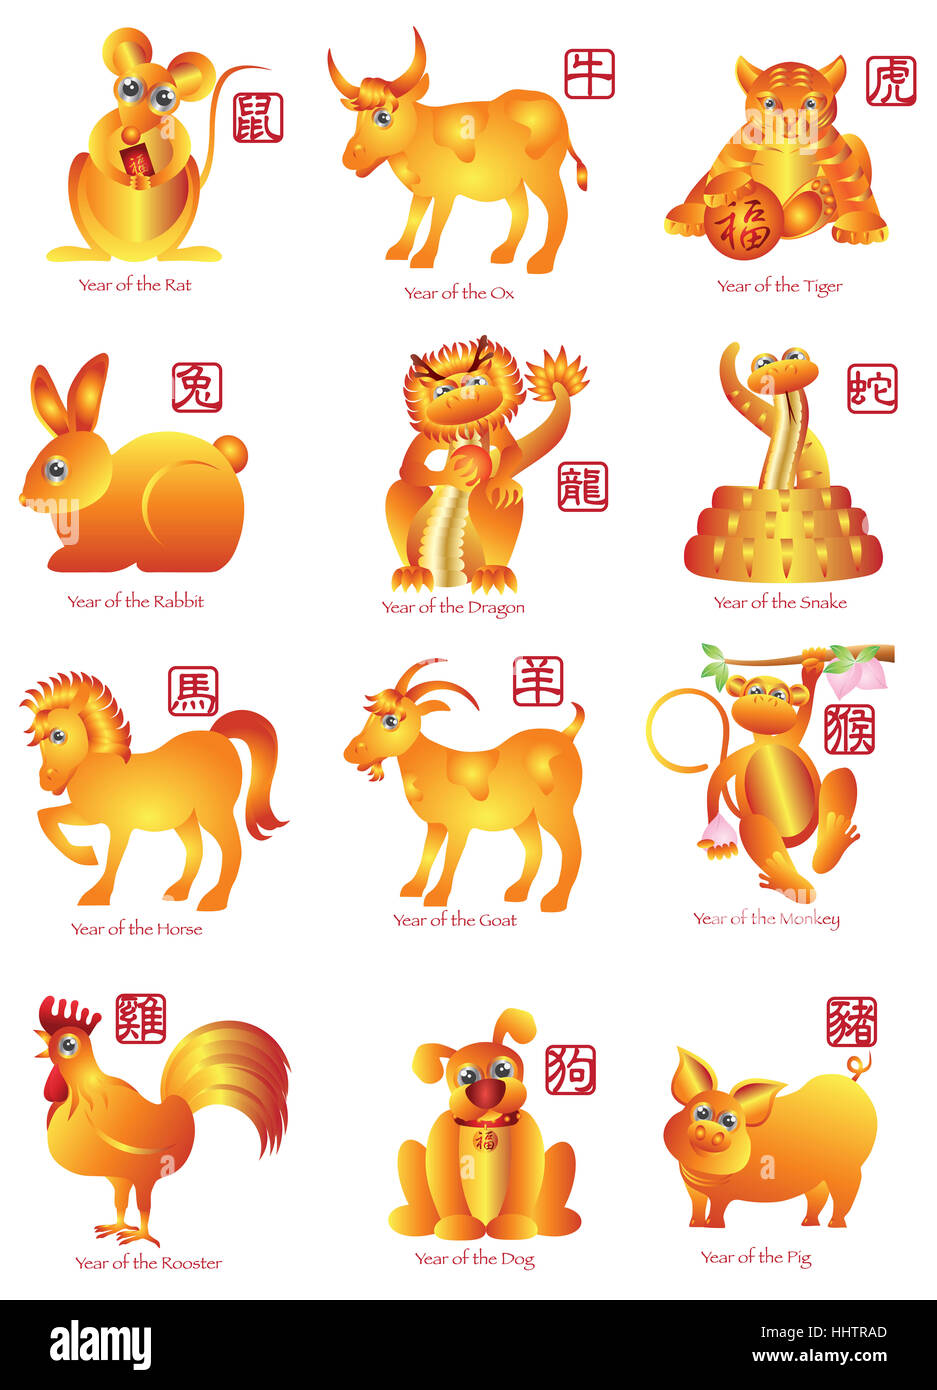 Chinese New Year Twelve Zodiac Horoscope Animals Illustration With Stock Photo Alamy